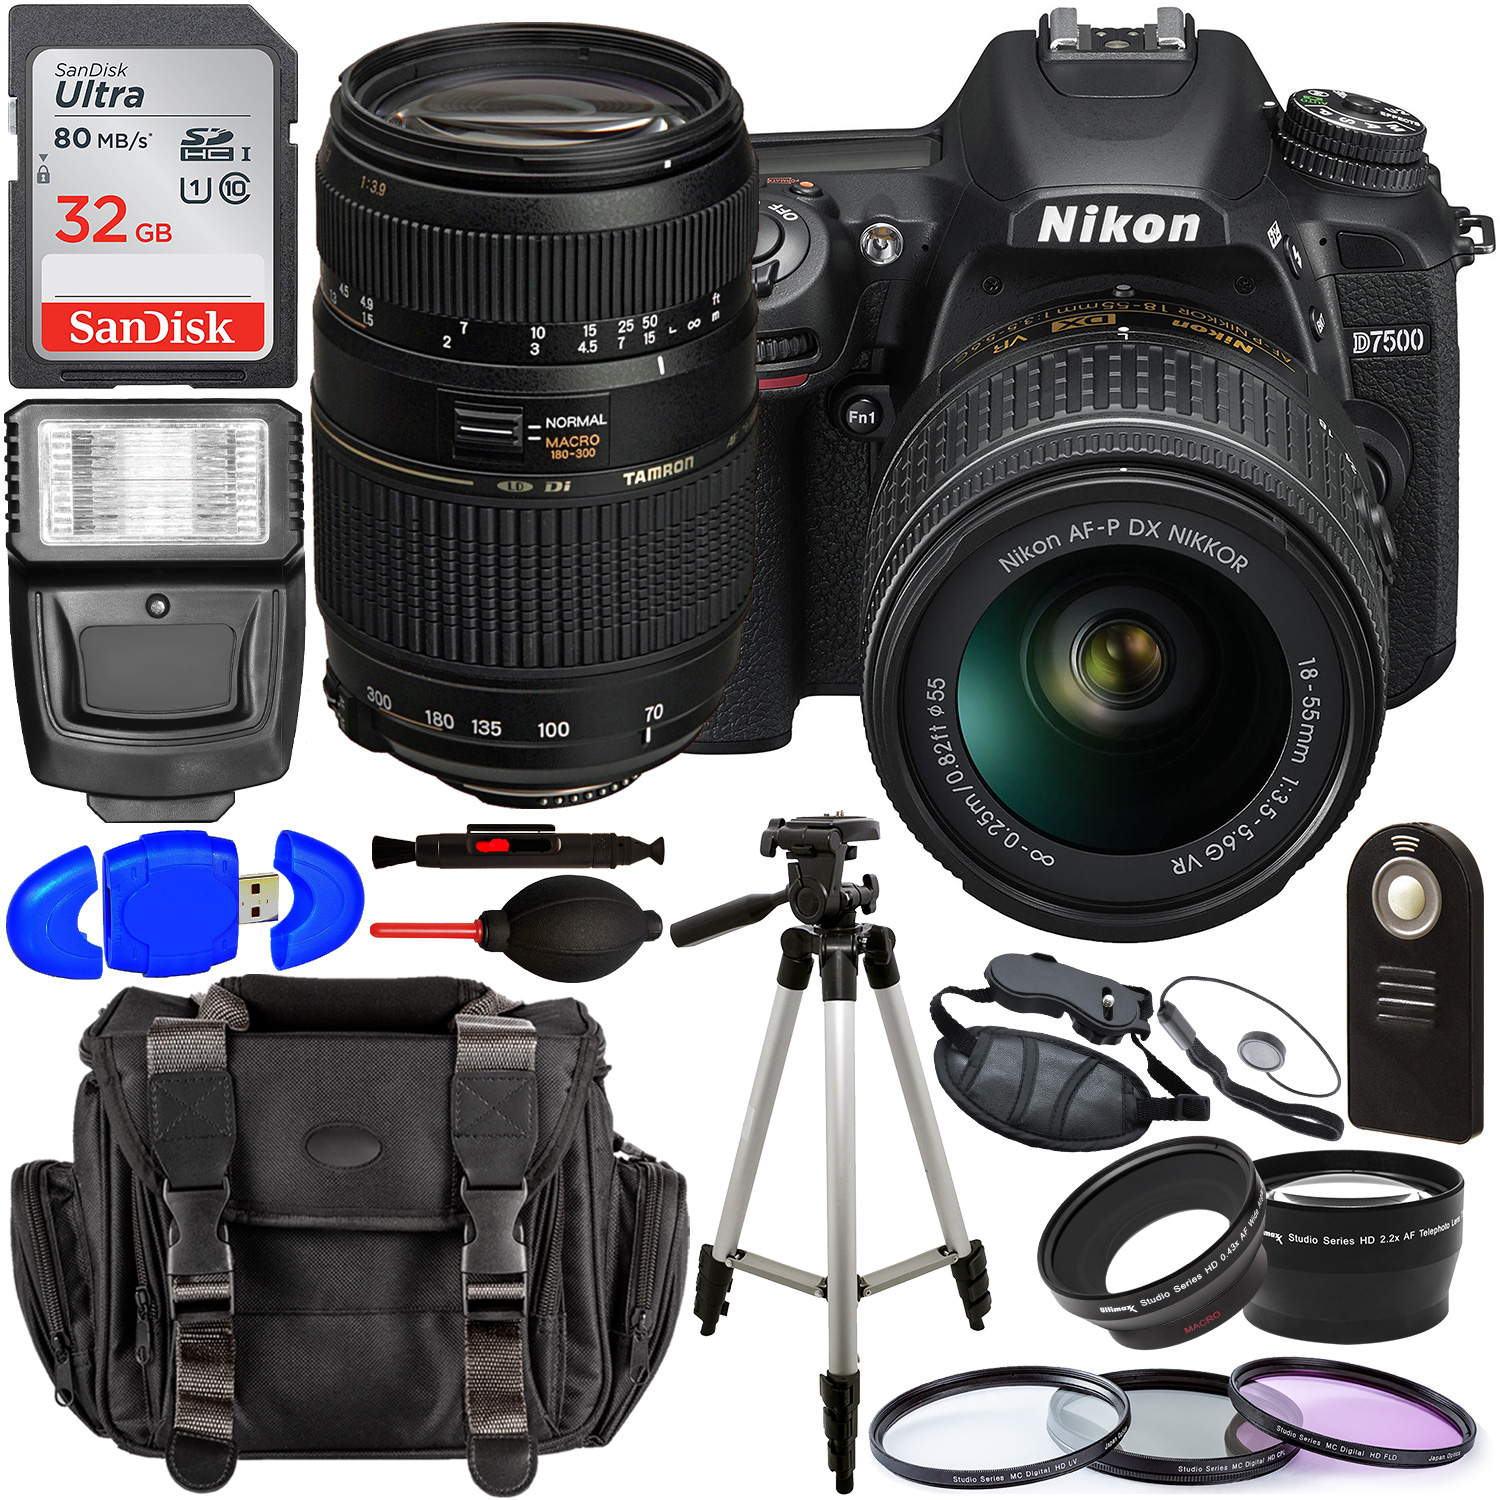 Nikon D7500 DSLR Camera with 18-55mm Lens (Black) â?? 1581 with Tamron 70-300mm Lens for Nikon AF - AF017NII-700 and Accessory Bundle